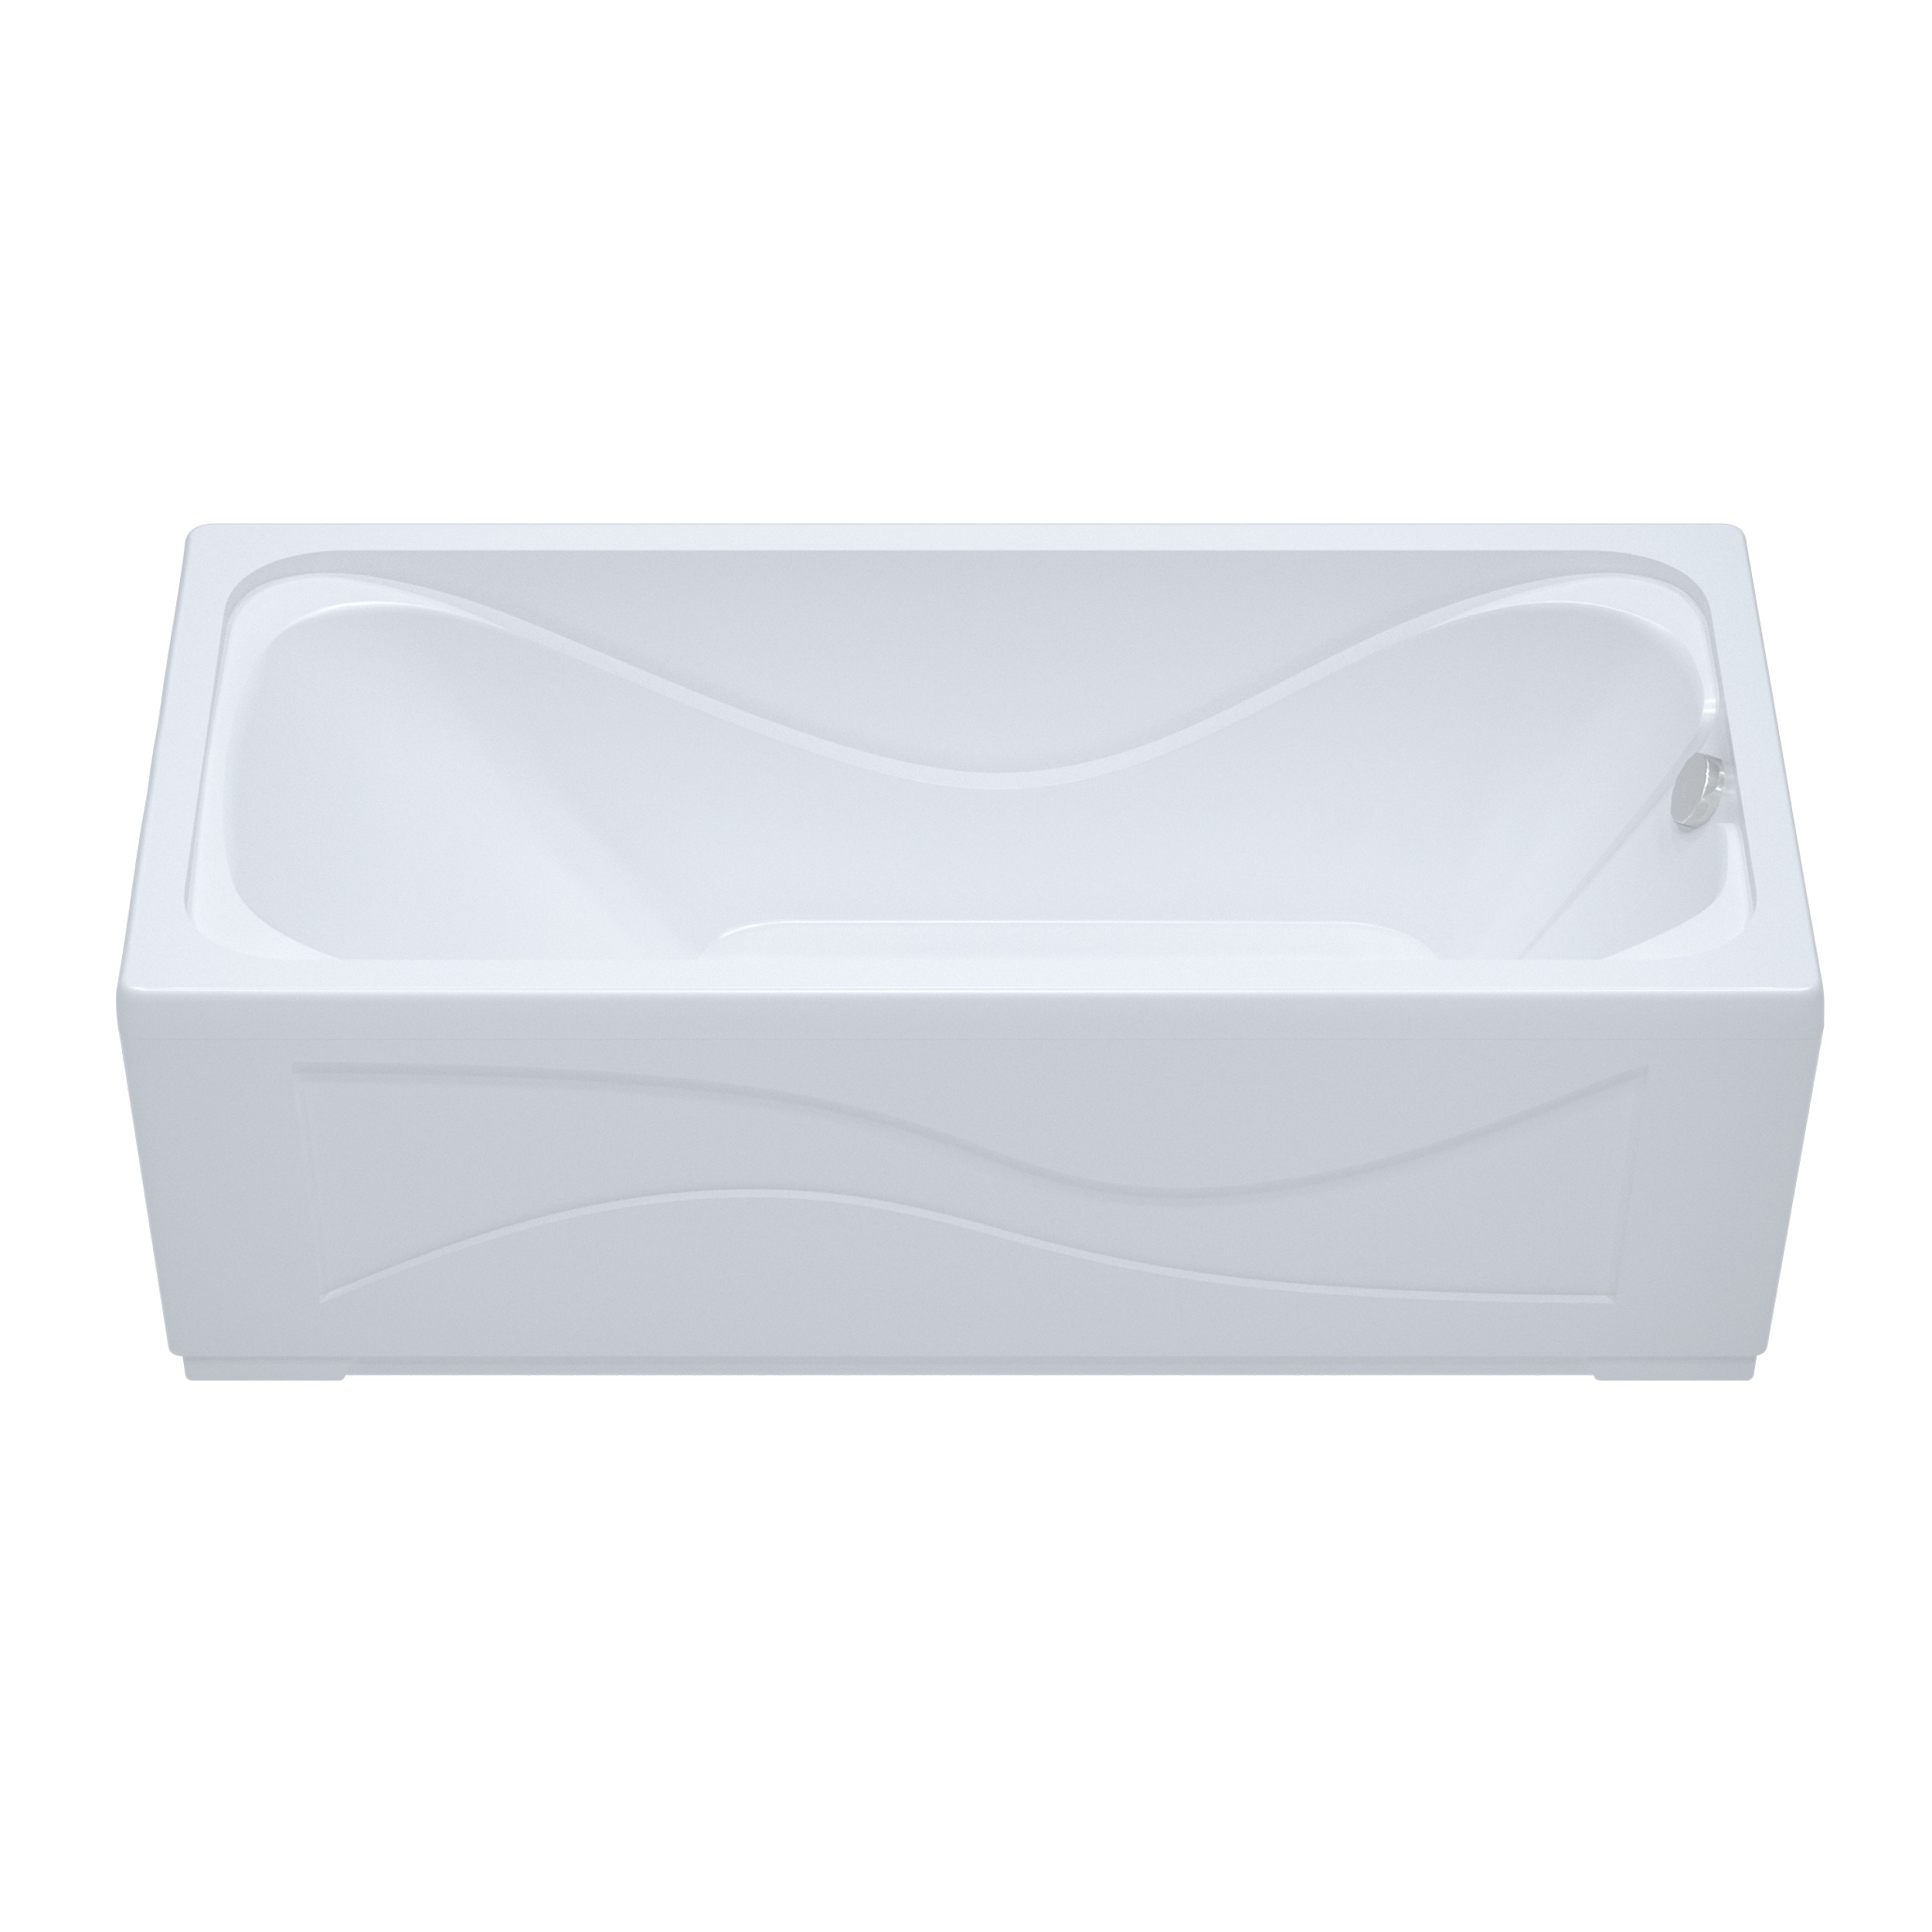 Акриловая ванна Тритон Стандарт 150x70, размер 150x70, цвет белый Н0000099328 - фото 2